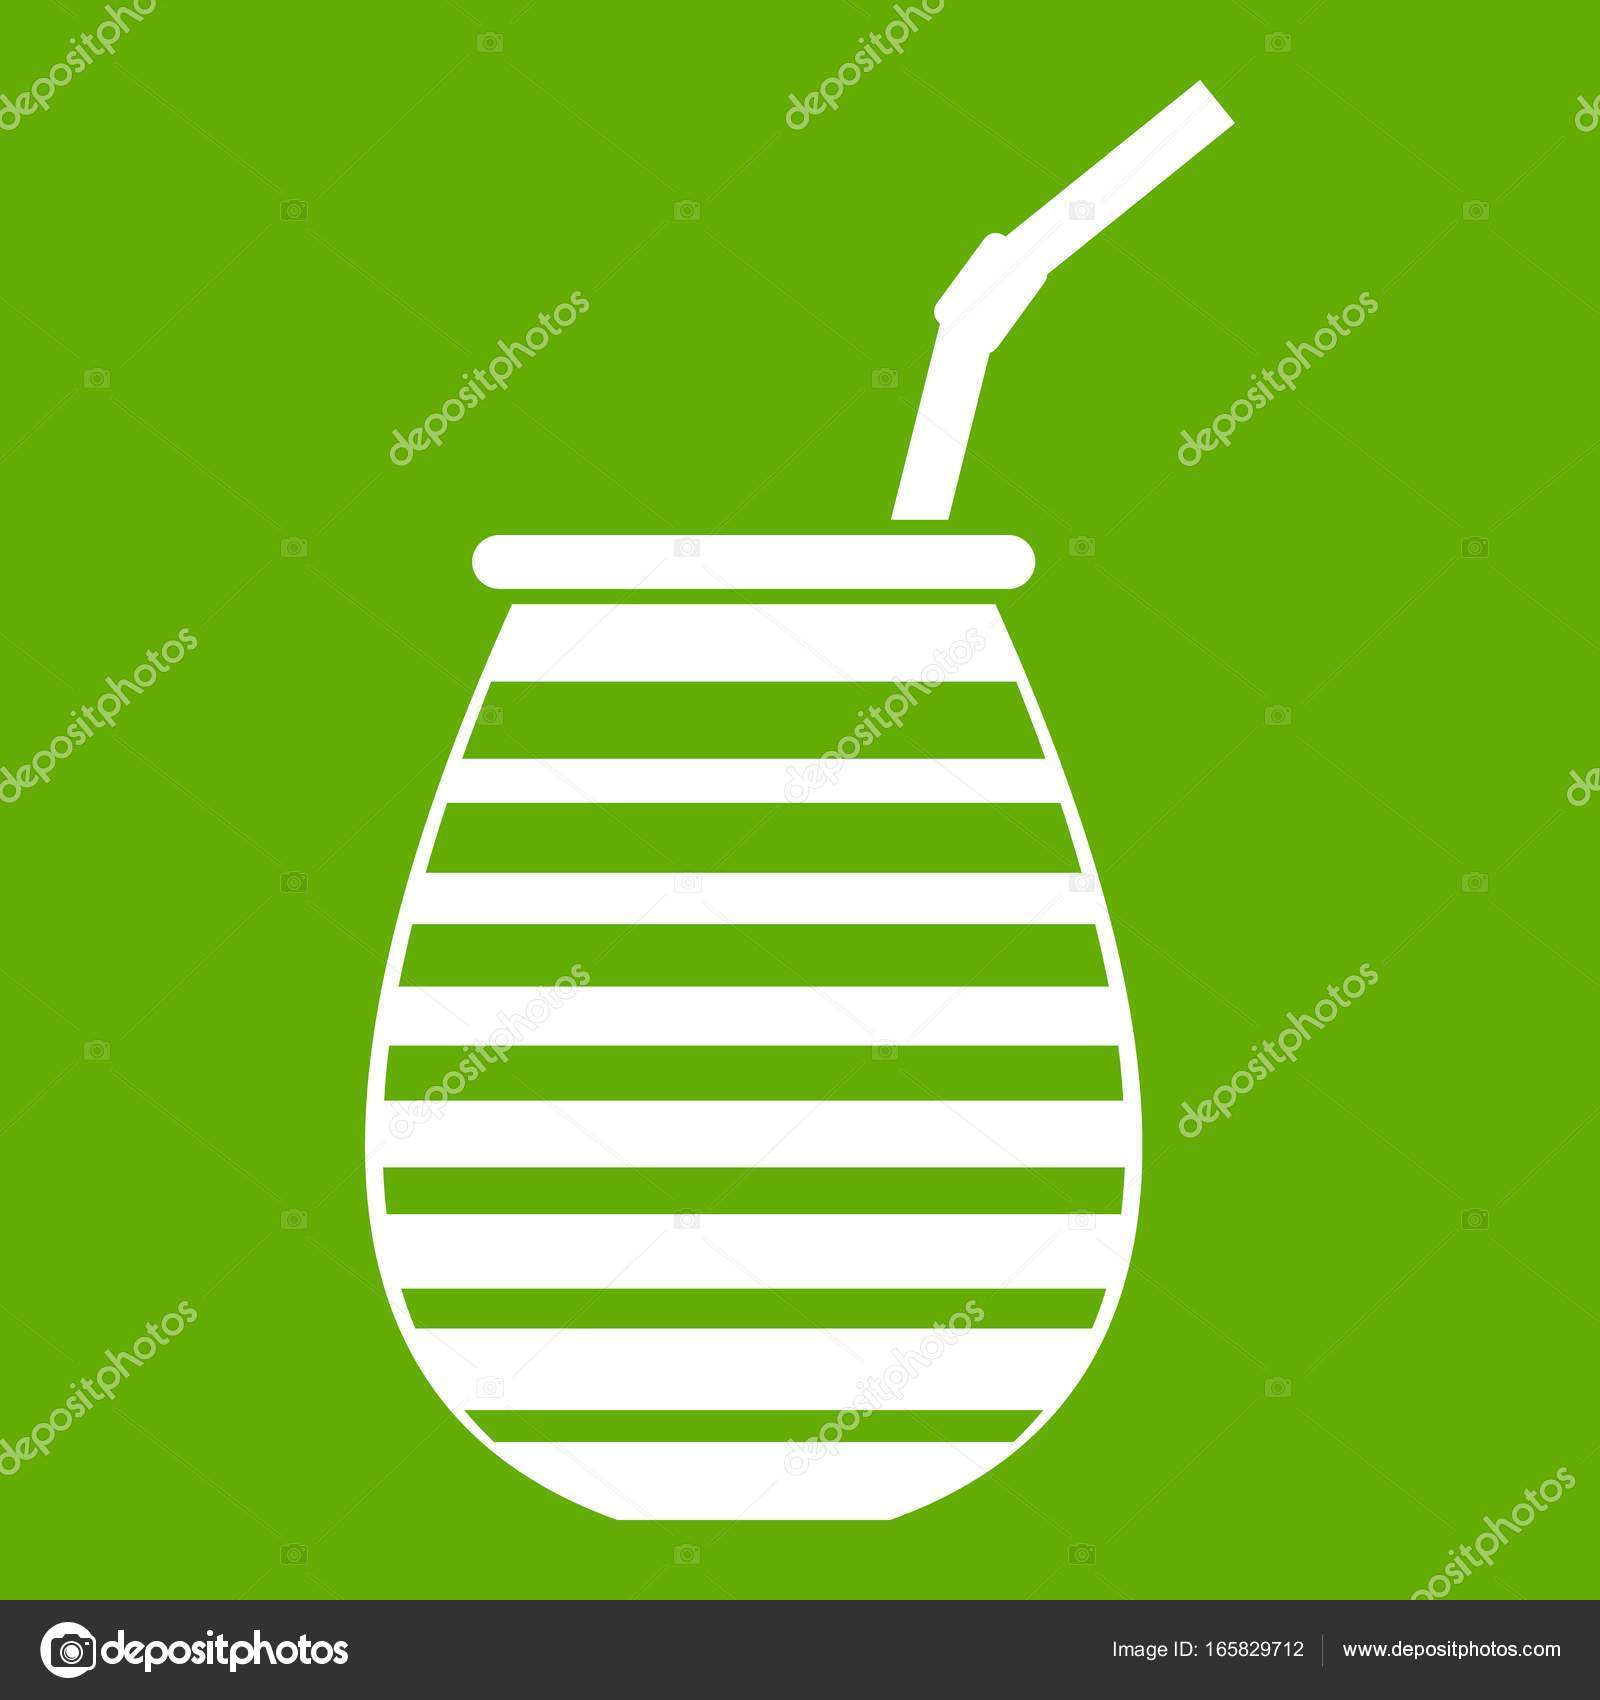 El icono de taza de té verde sobre un fondo blanco Imagen Vector